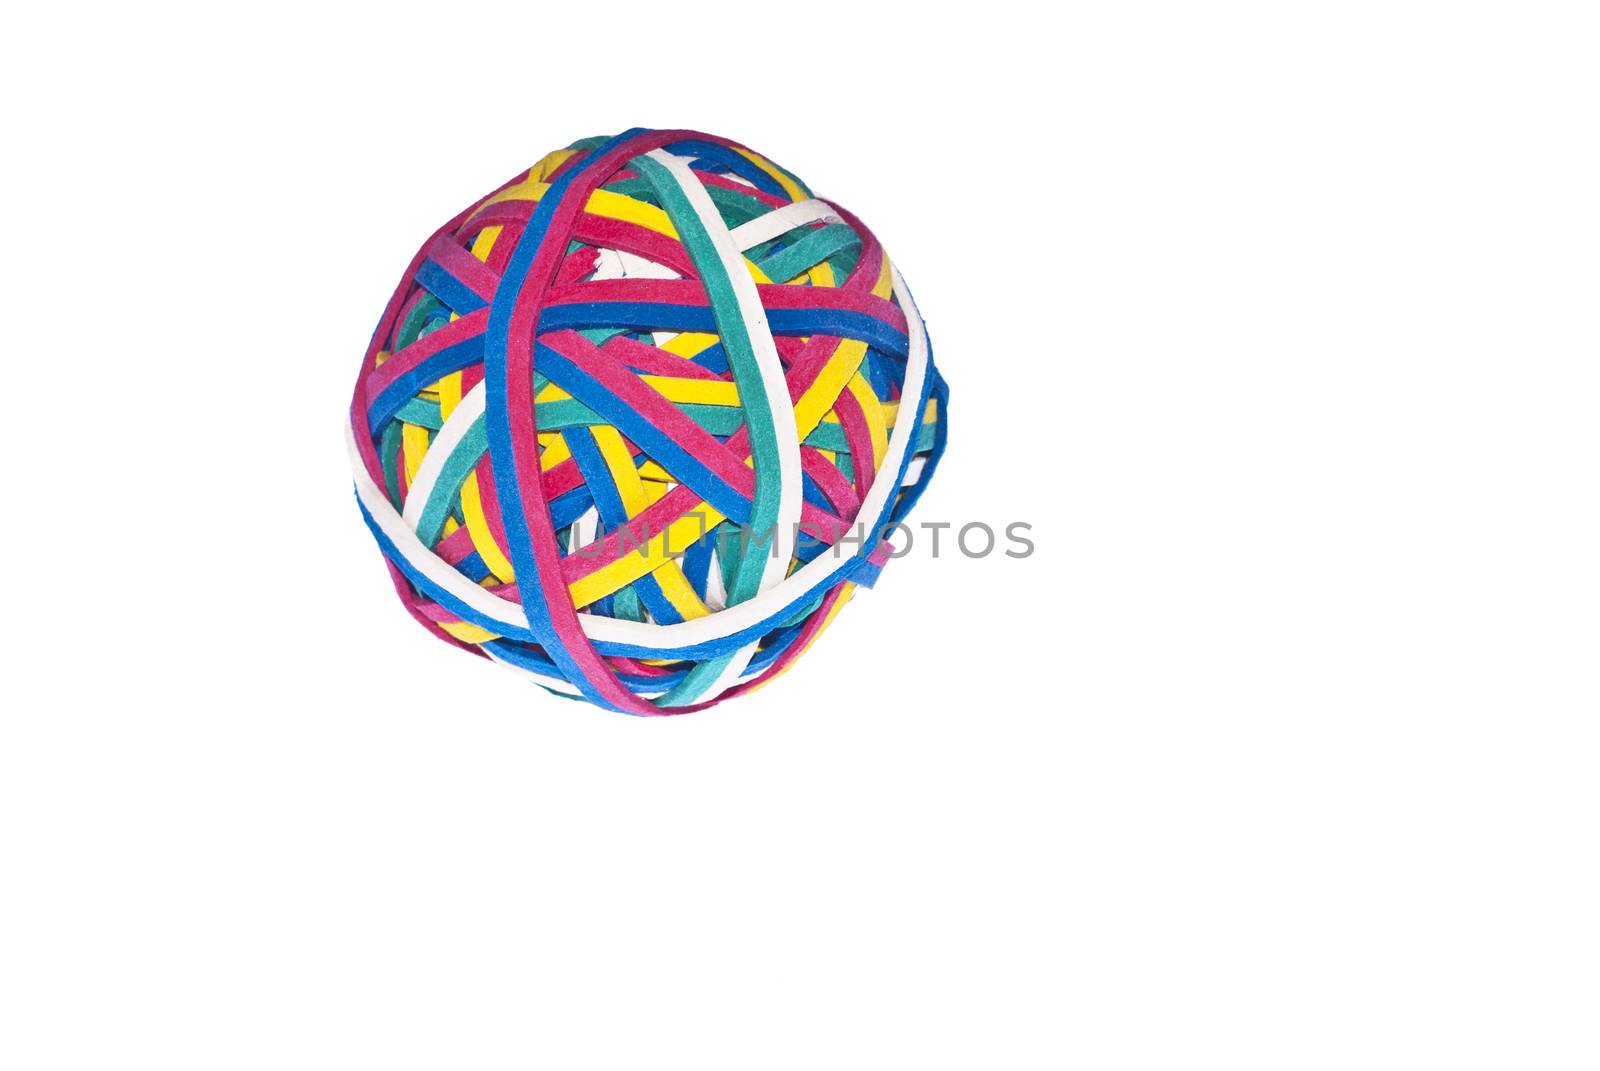 Elastic band, rubber band ball isolated  by gandolfocannatella